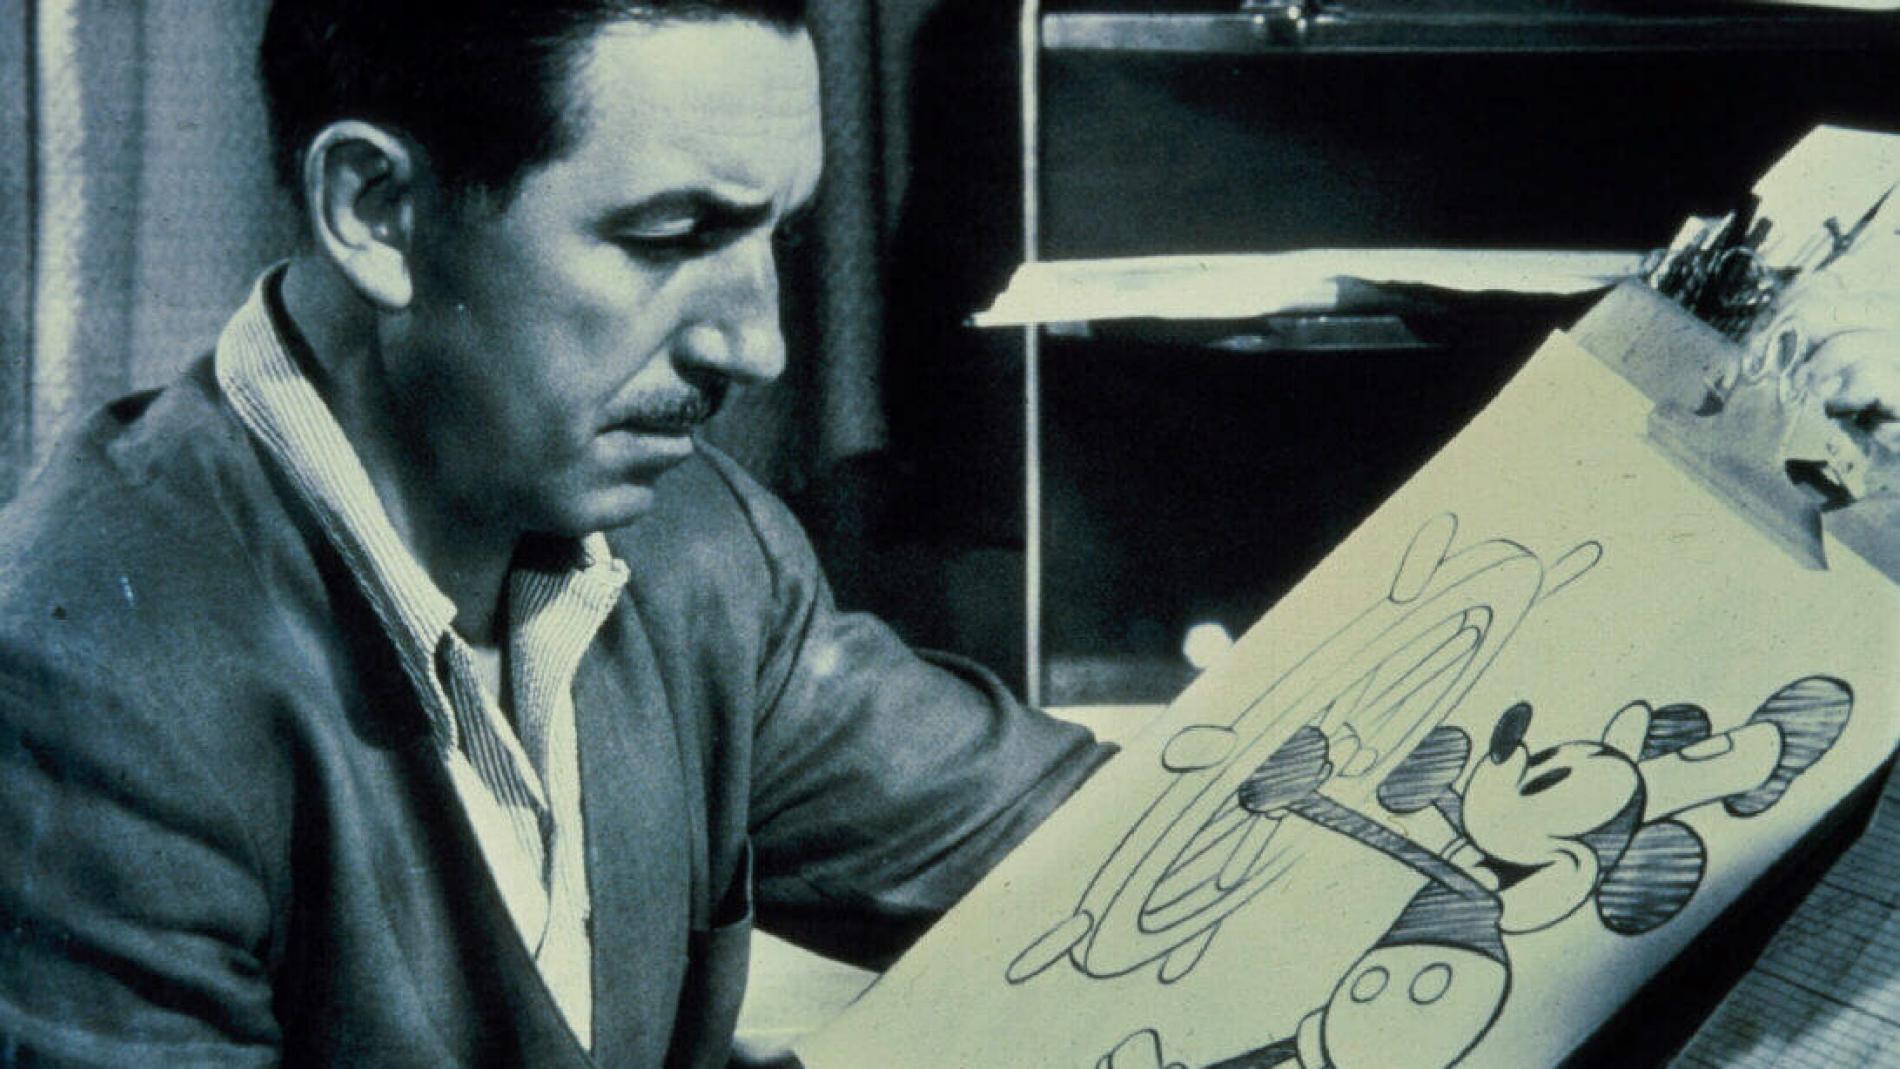 Libro - Los Archivos de Walt Disney - Sus películas de Animación 1921-1968  - TASCHEN - ¡De nuevo disponible!